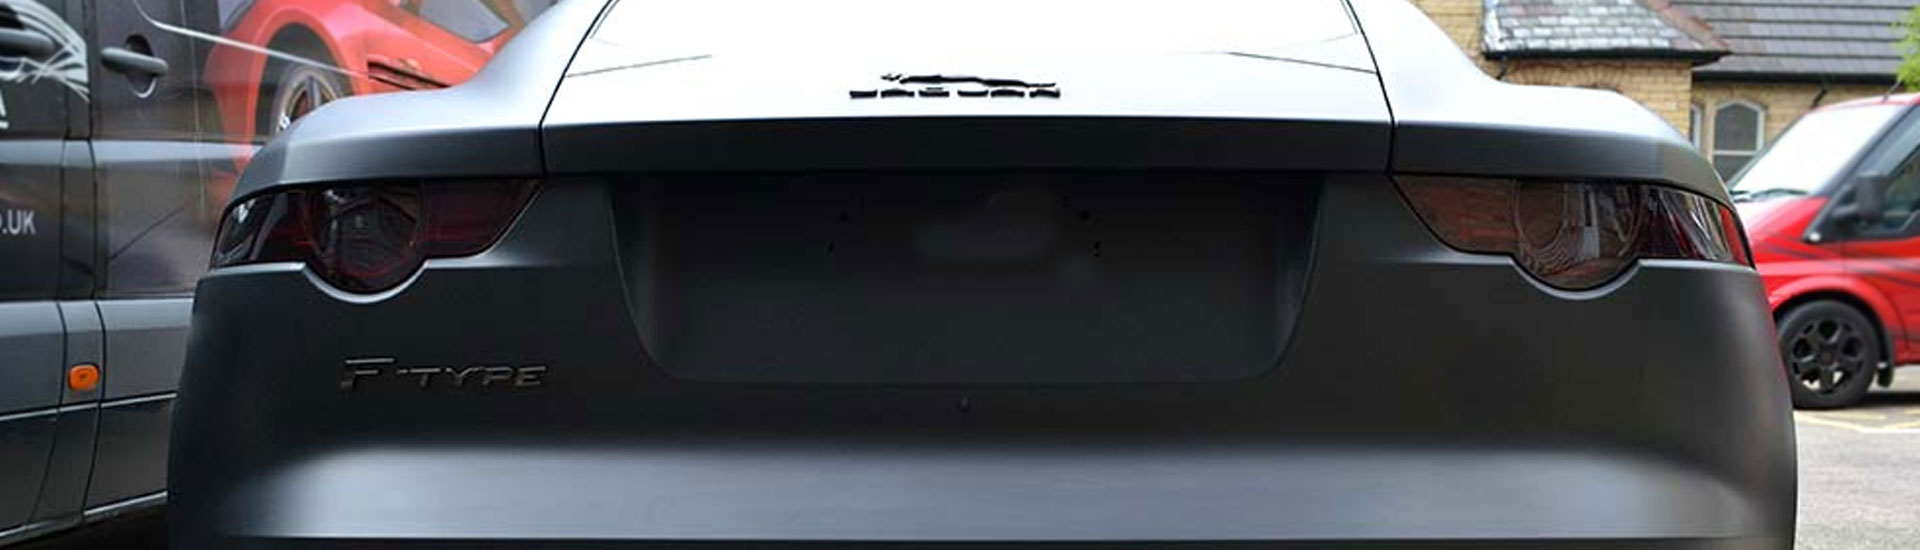 Jaguar Tail Light Tint Covers